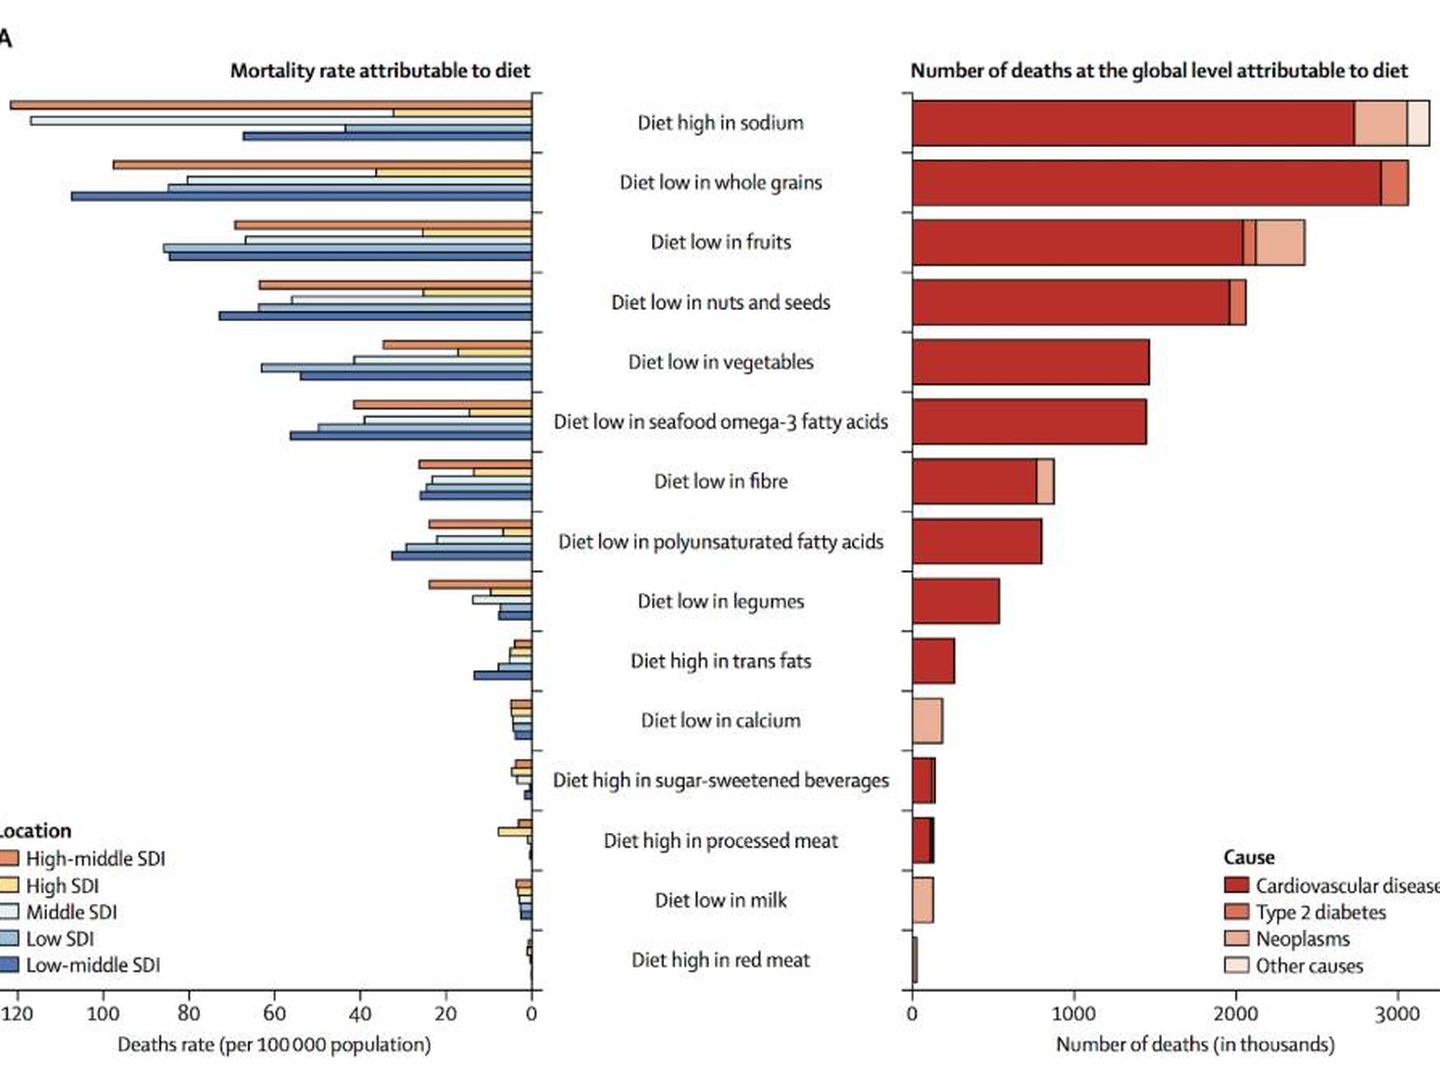 Figura 1. Tasa de mortalidad y número de muertes a nivel global atribuibles a la dieta.